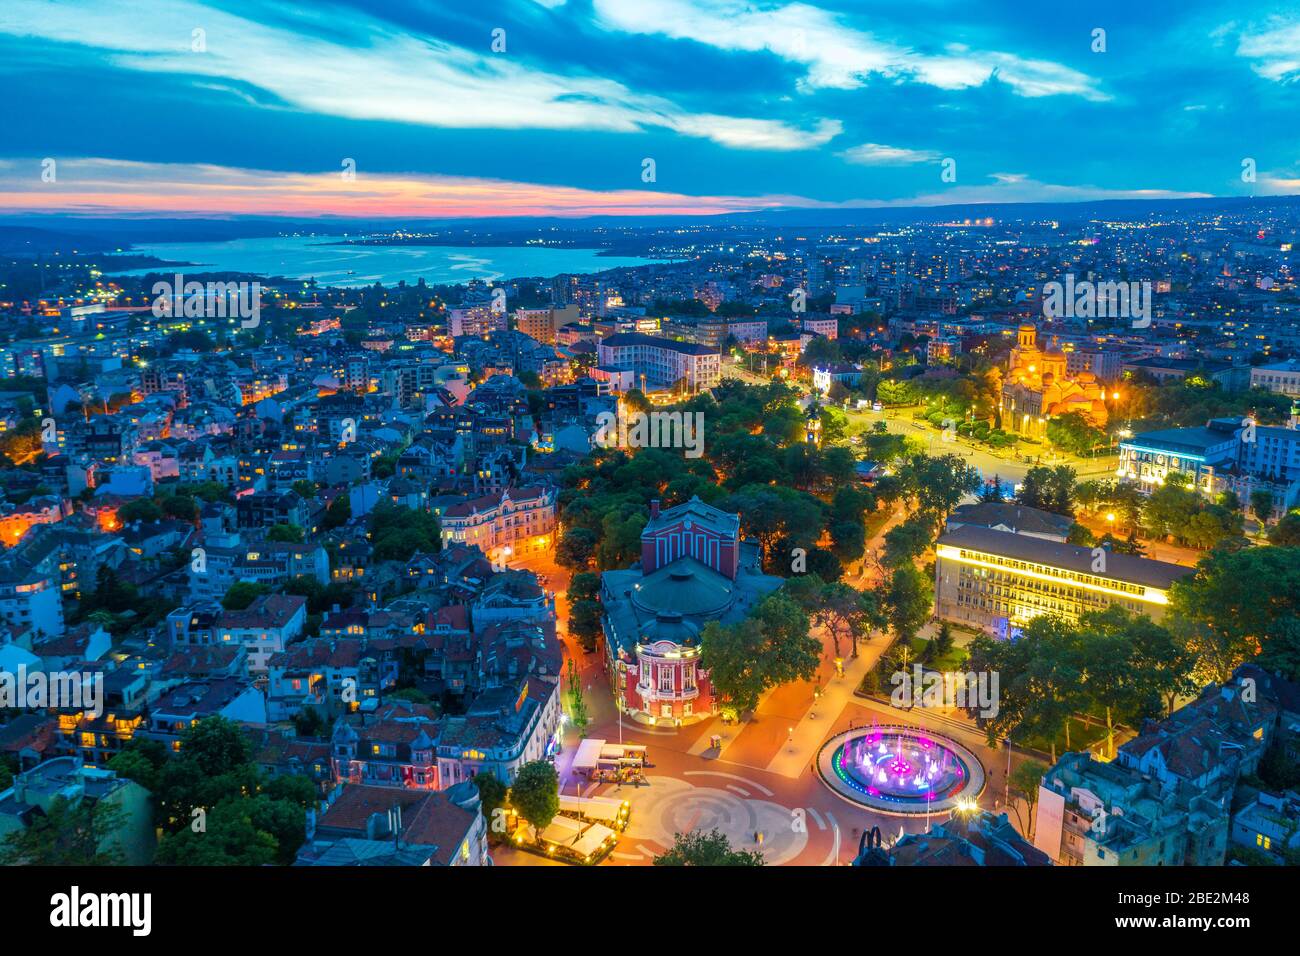 Europa, Bulgaria, Varna, vista aérea de la Ópera Estatal Foto de stock